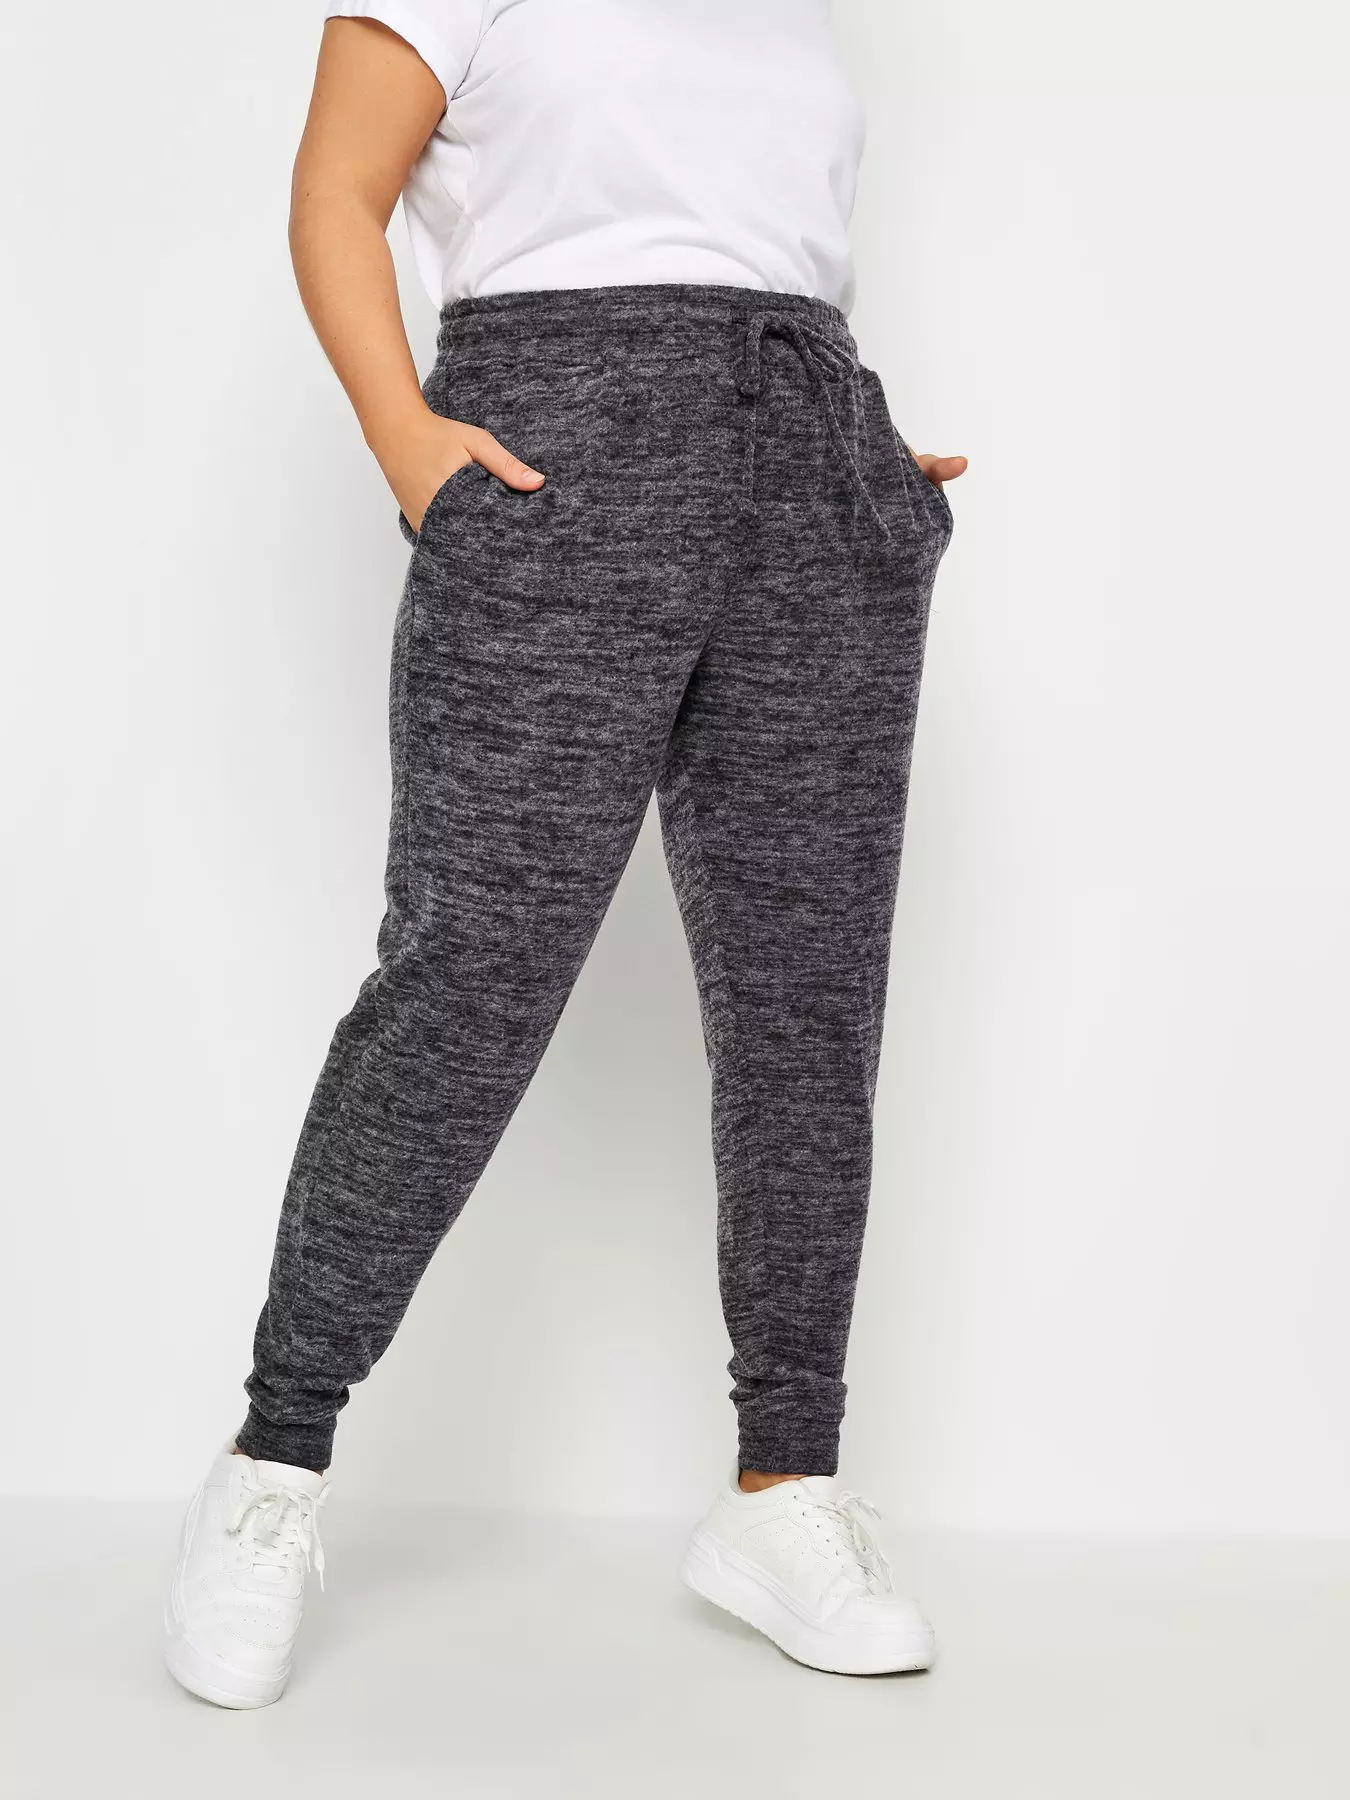 Strike Dri-FIT Women's Pants - Grey